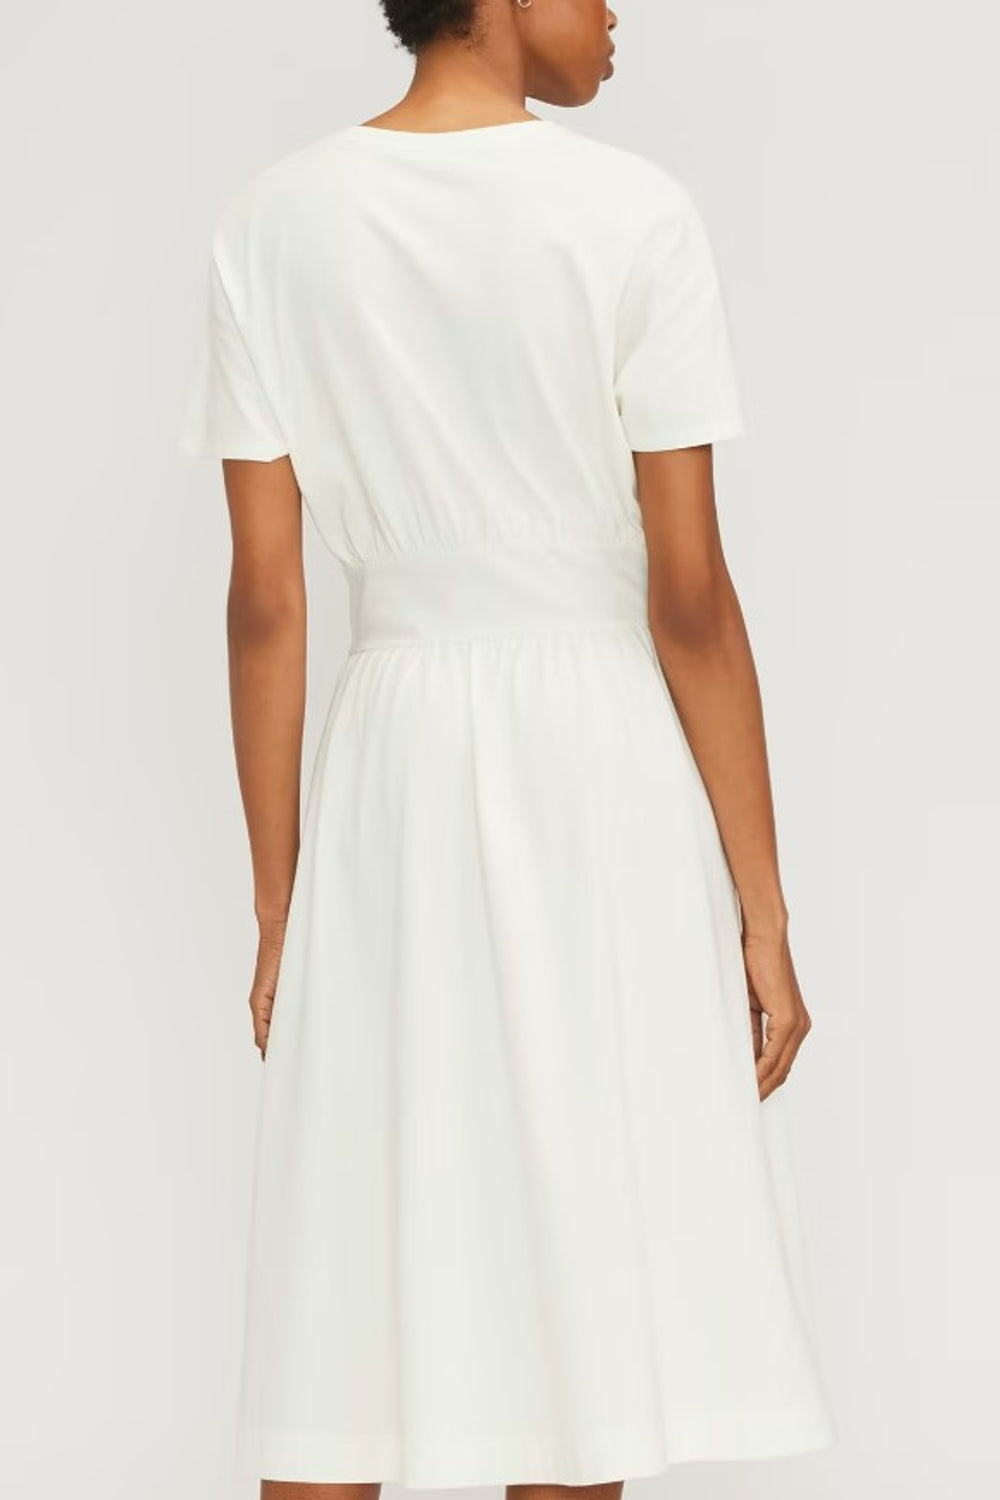 Delightful White Dress